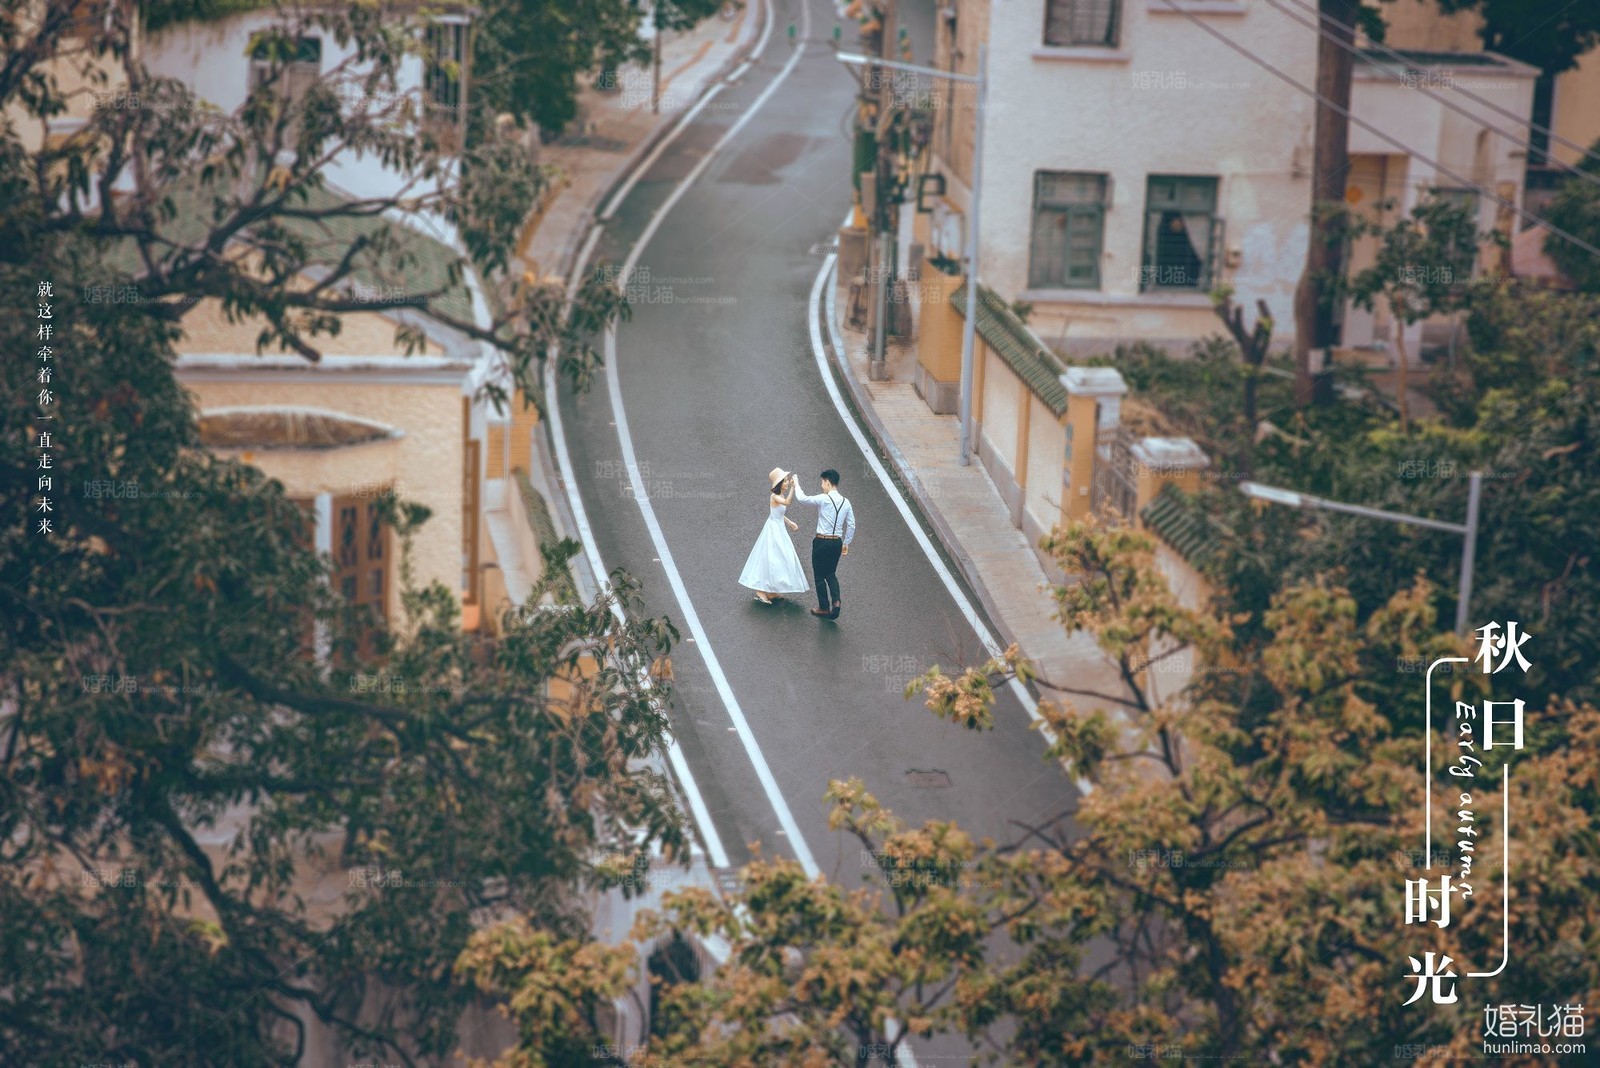 2018年11月广州结婚照,,韶关婚纱照,婚纱照图片